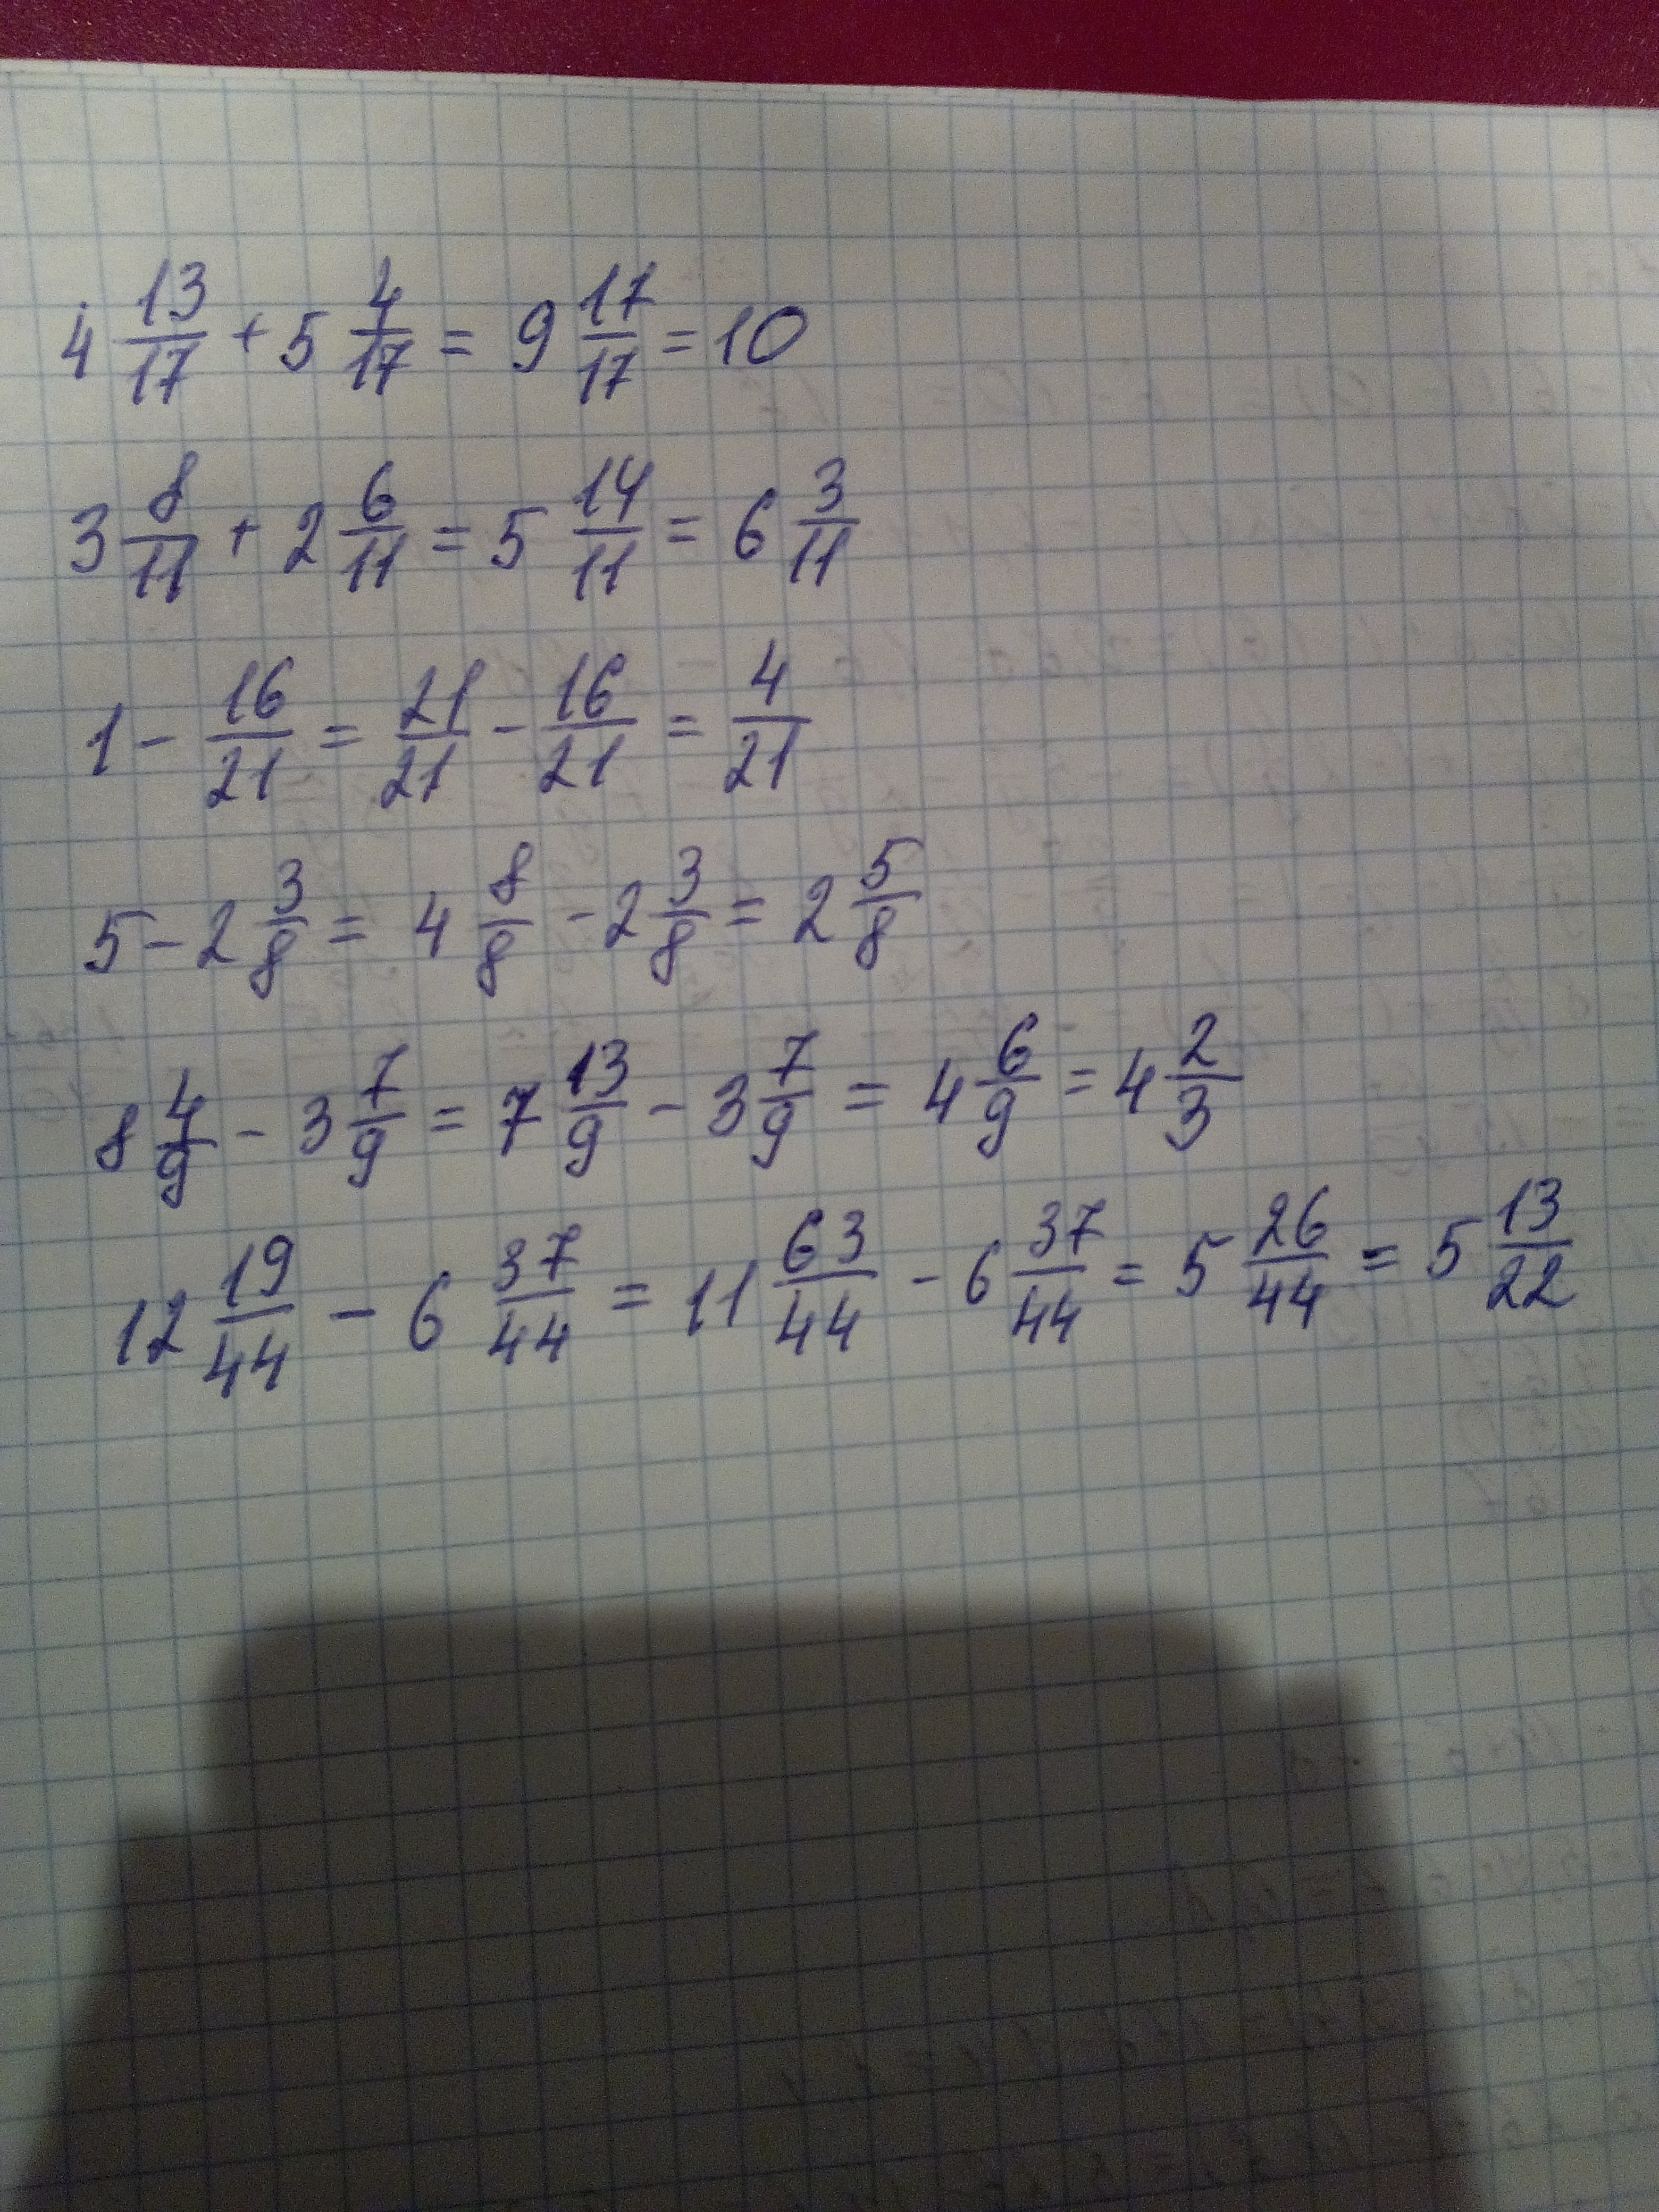 1 11 13 2 7 6. (5 1/16-1 1/8)×(5/6+3/15). (2/5-6,6) :(1 1/4- 11/3) Решение. (6 3/4-5 2/5) +(3 4/5+2 1/5) Решение. (9-2 3/11)+(2+1 9/11) Решение.